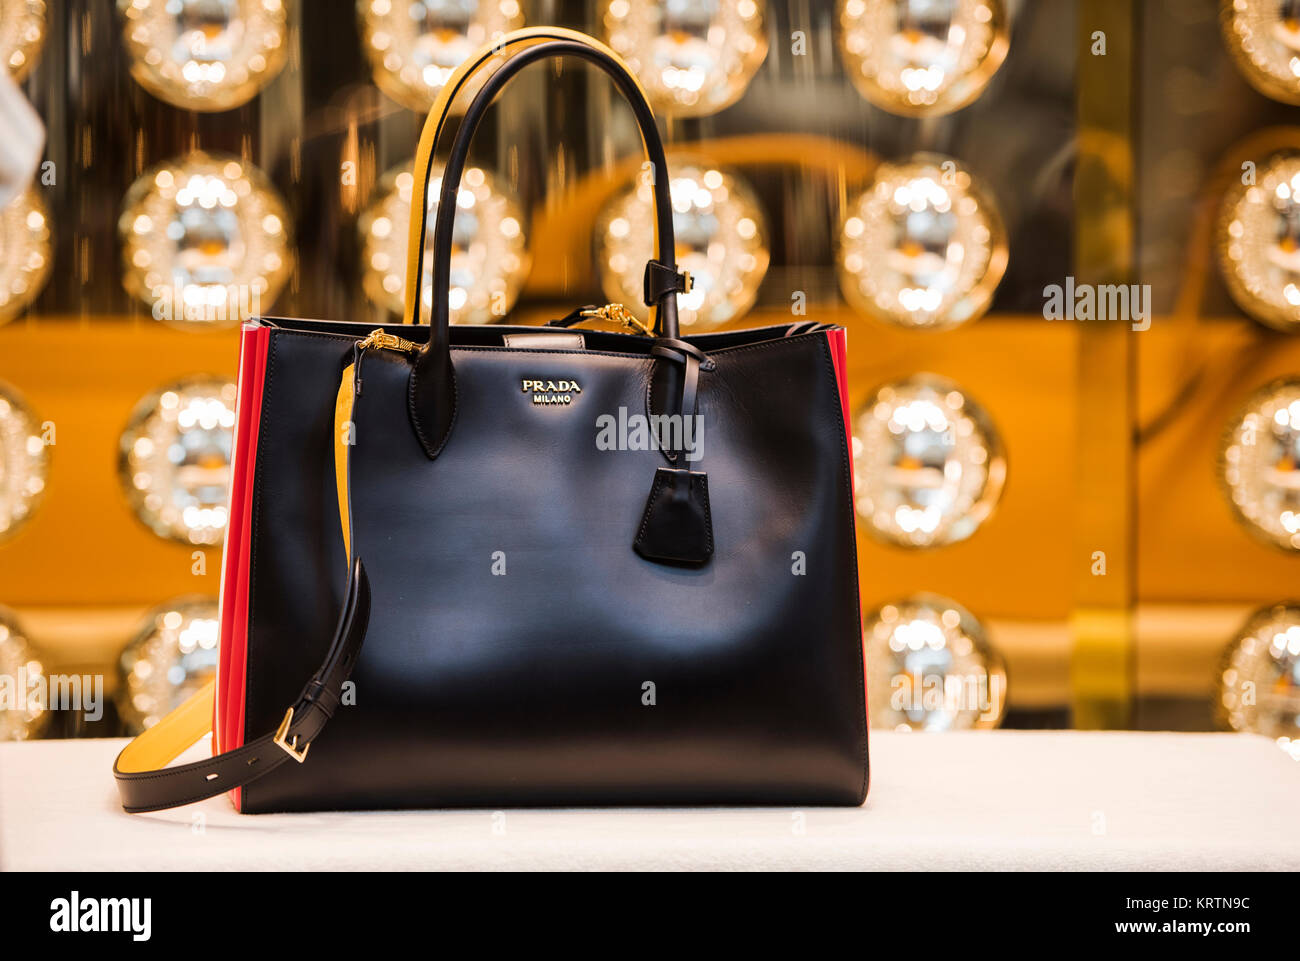 Milan prada handbag hi-res stock photography and images - Alamy